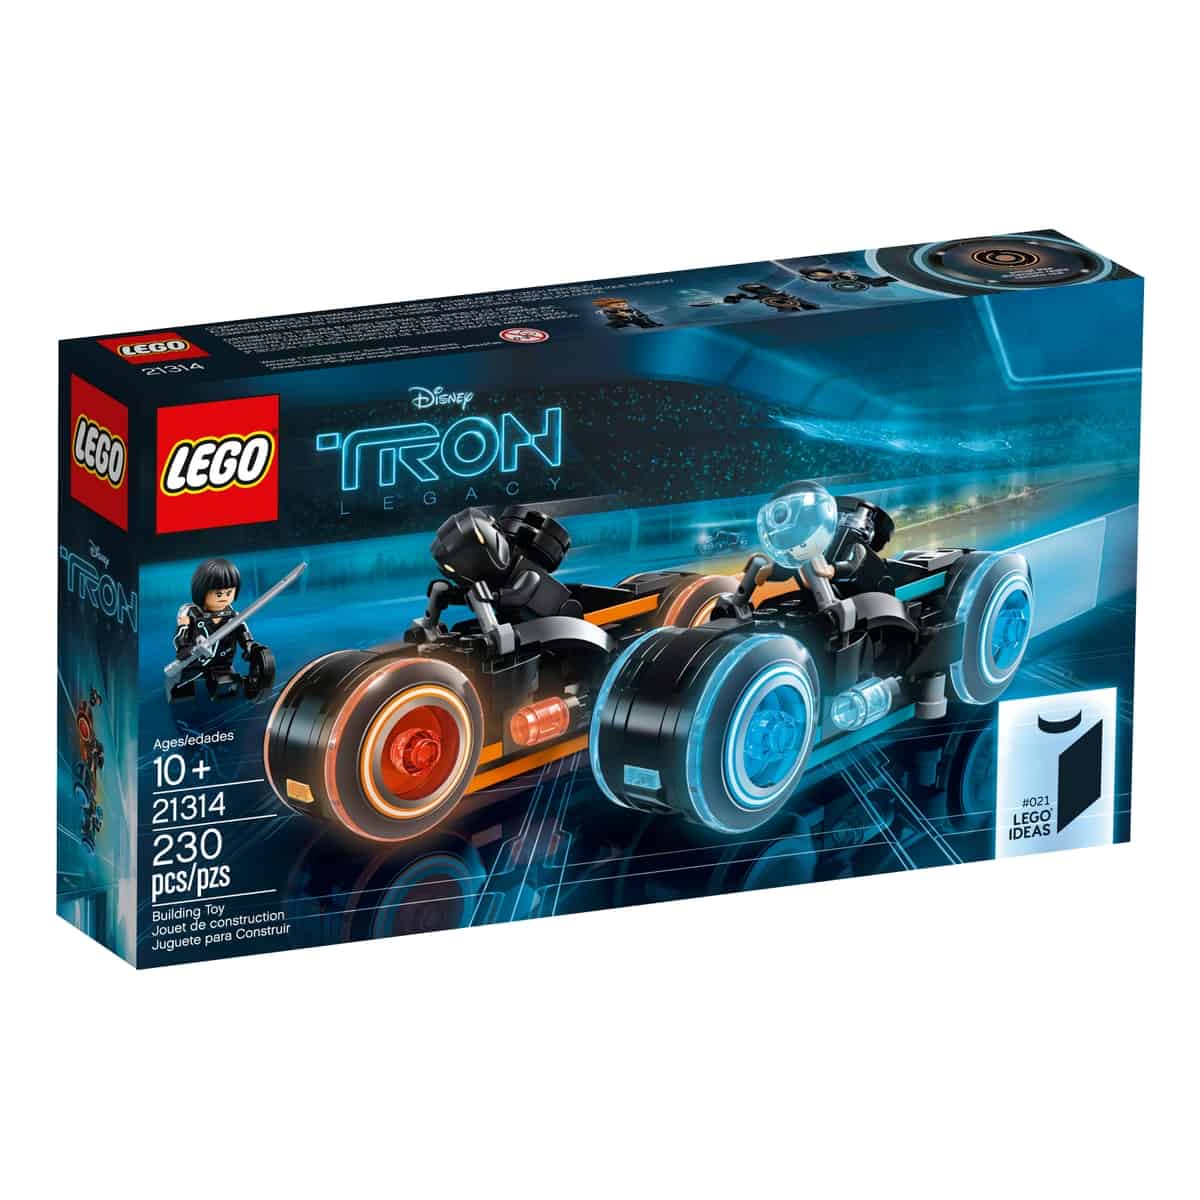 Lego 21314 Tron Legacy